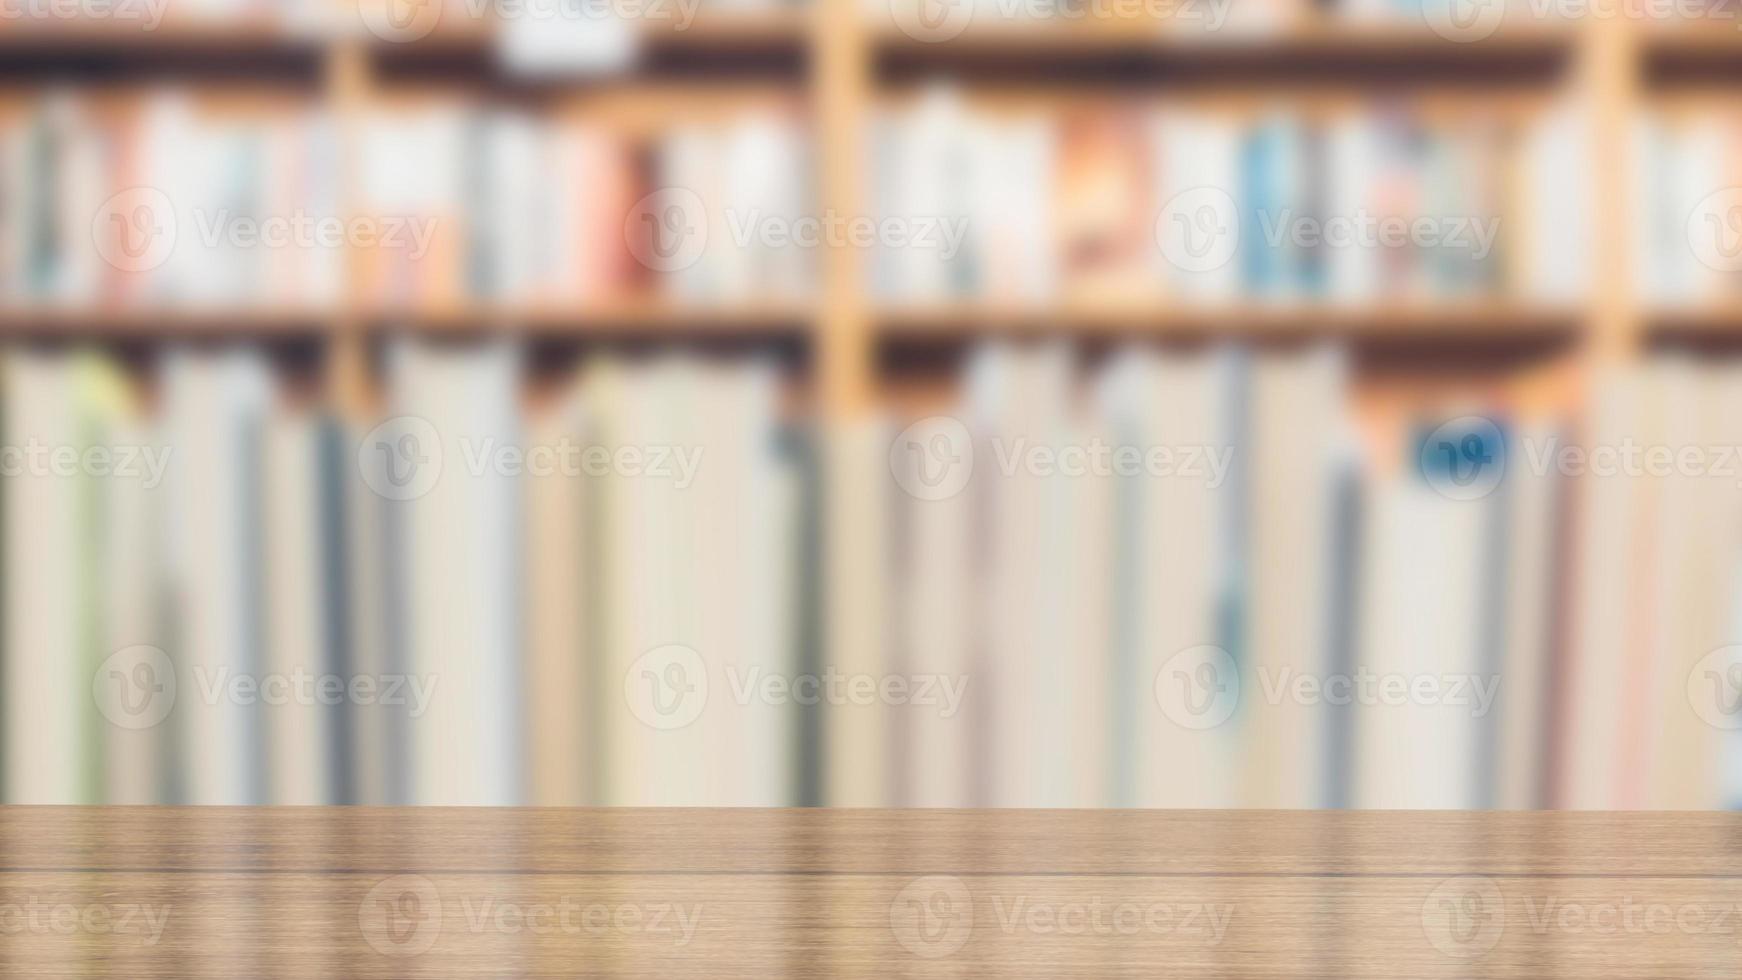 armazenamento de livros e mesa de madeira na biblioteca para renderização em 3d do conceito de educação foto